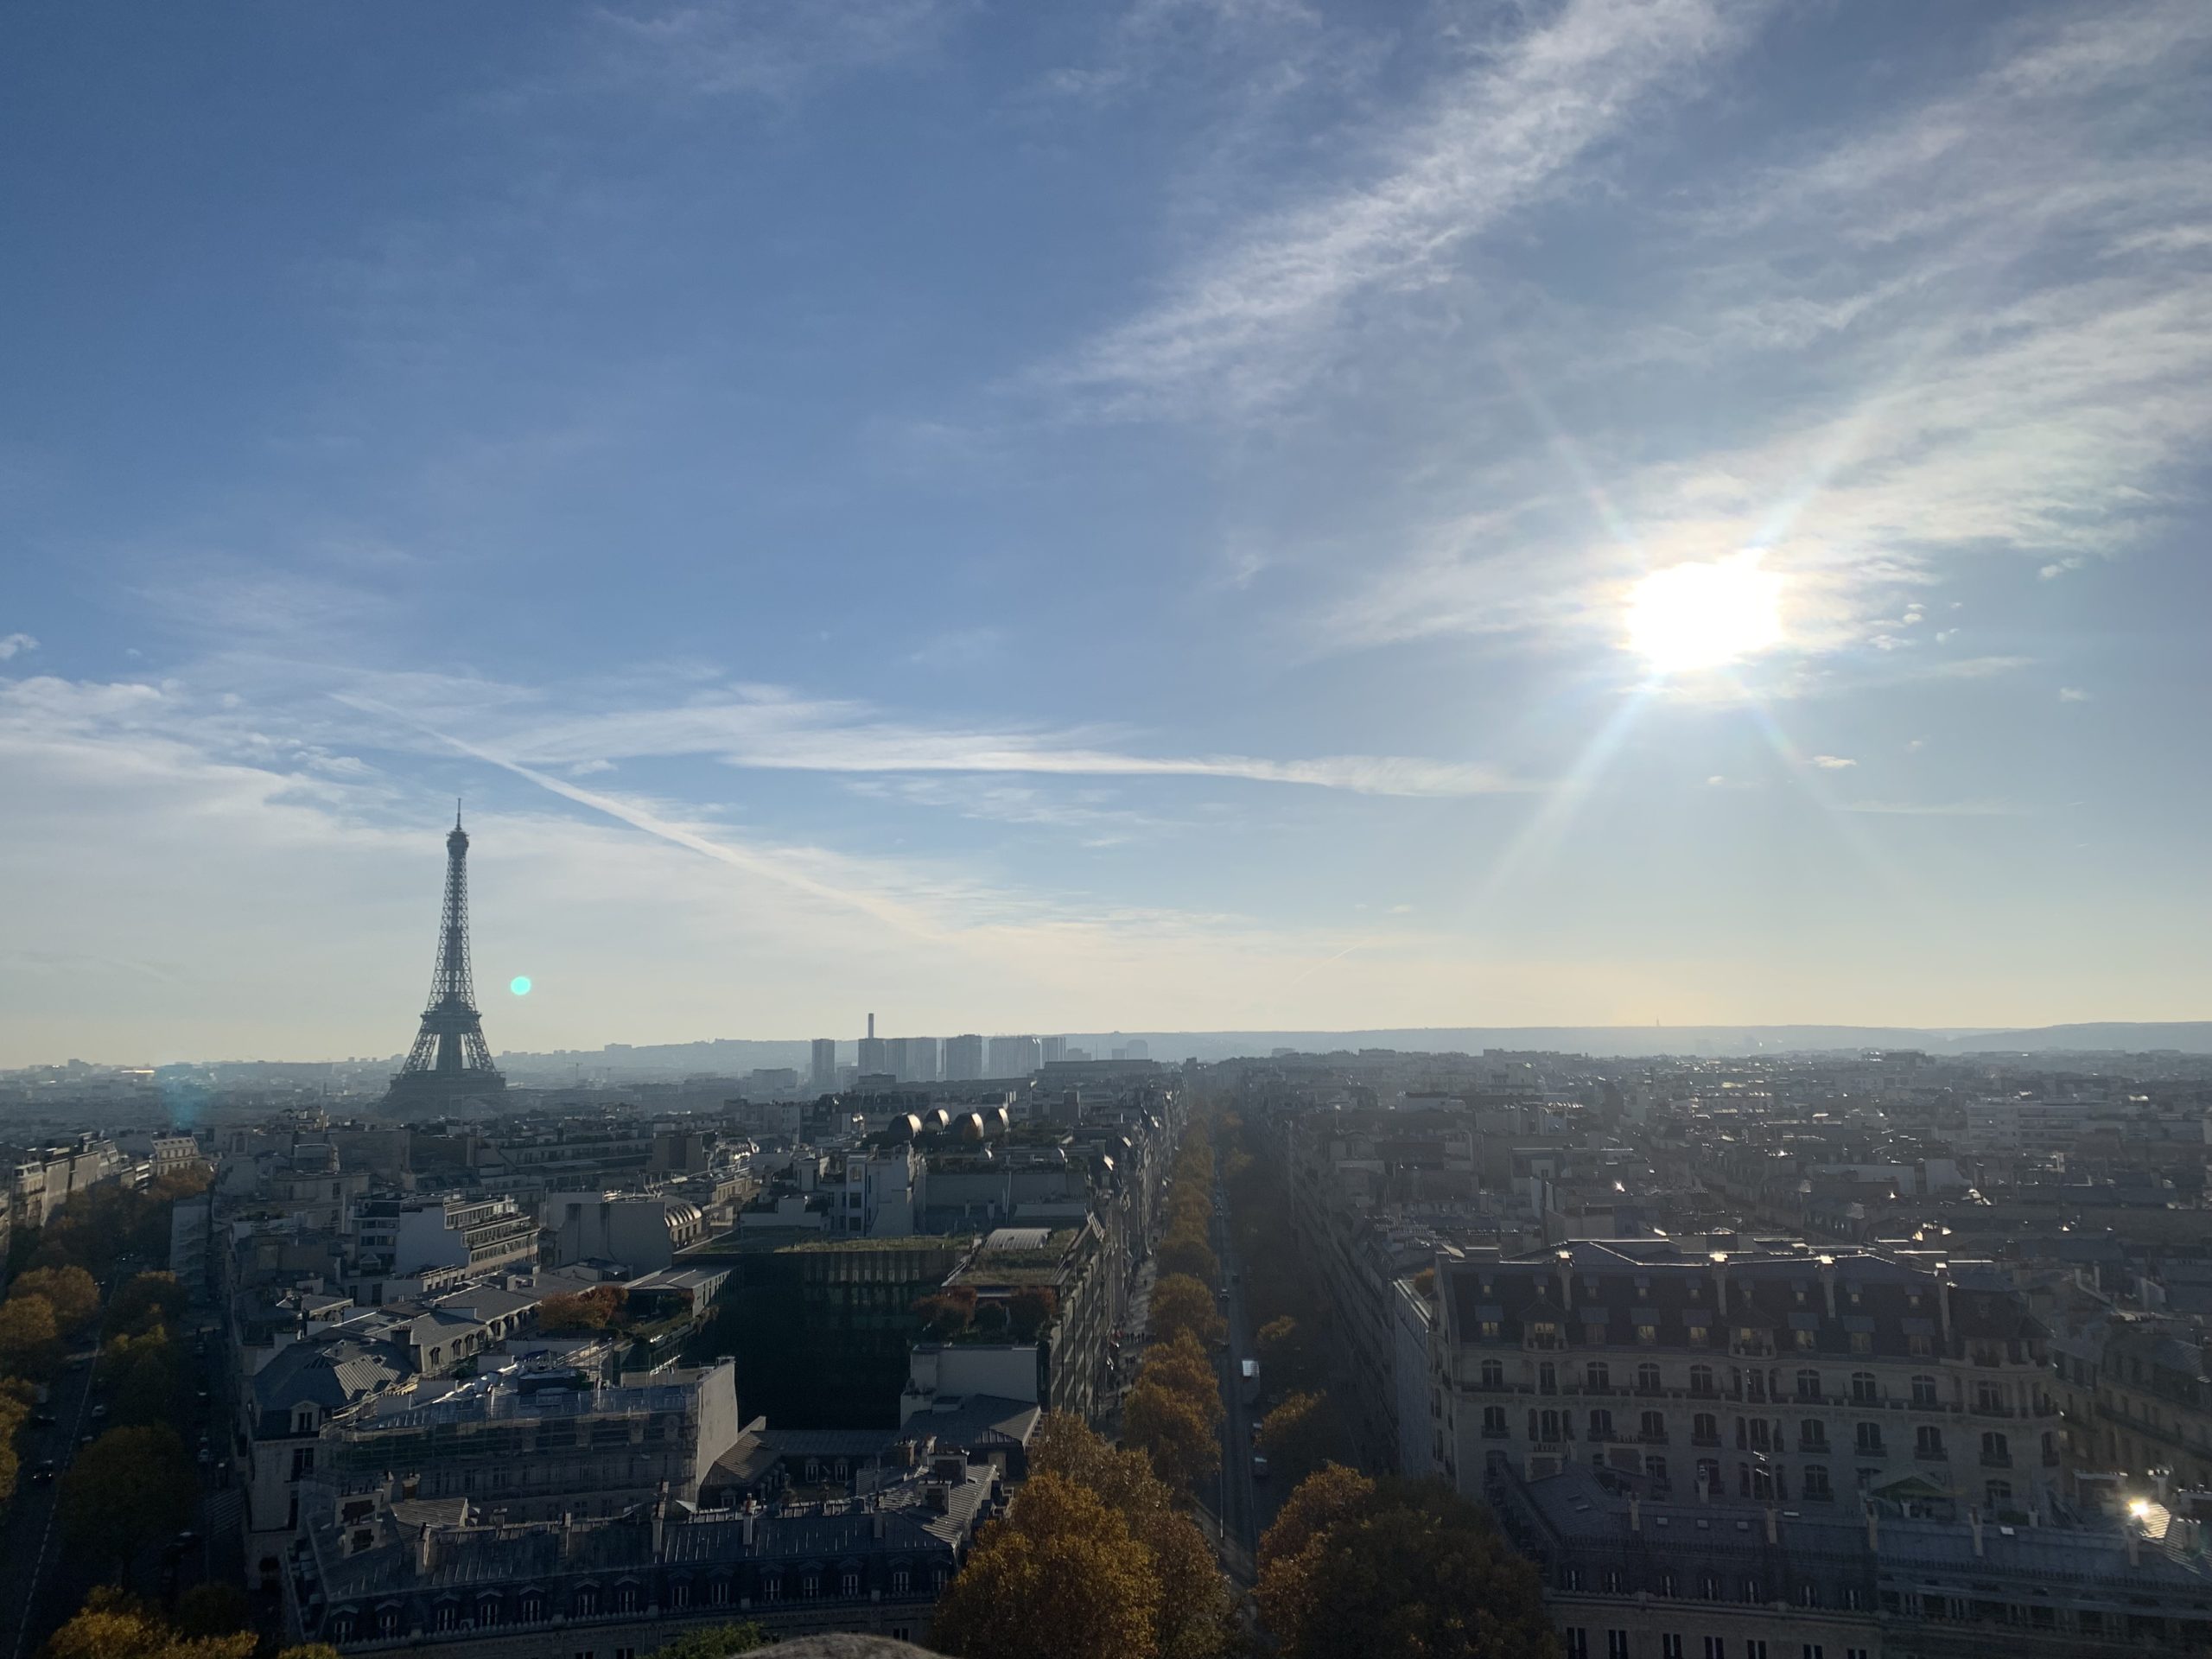 The Parisian skyline.